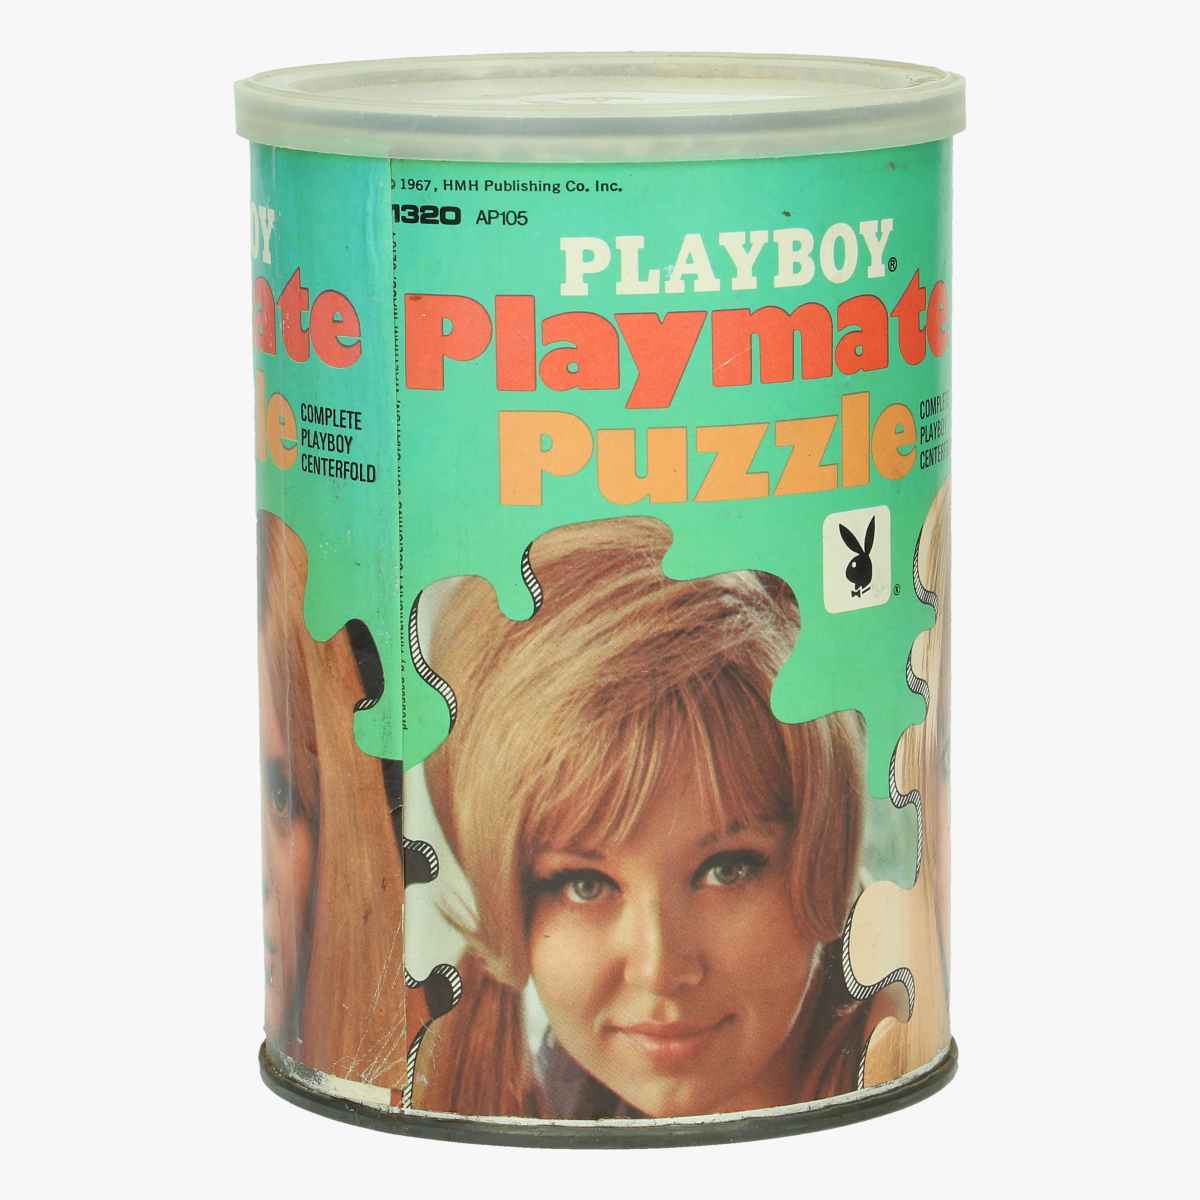 Afbeeldingen van vintage playboy puzzel 1967 mis october majken haugedal hmh publishing co .inc.